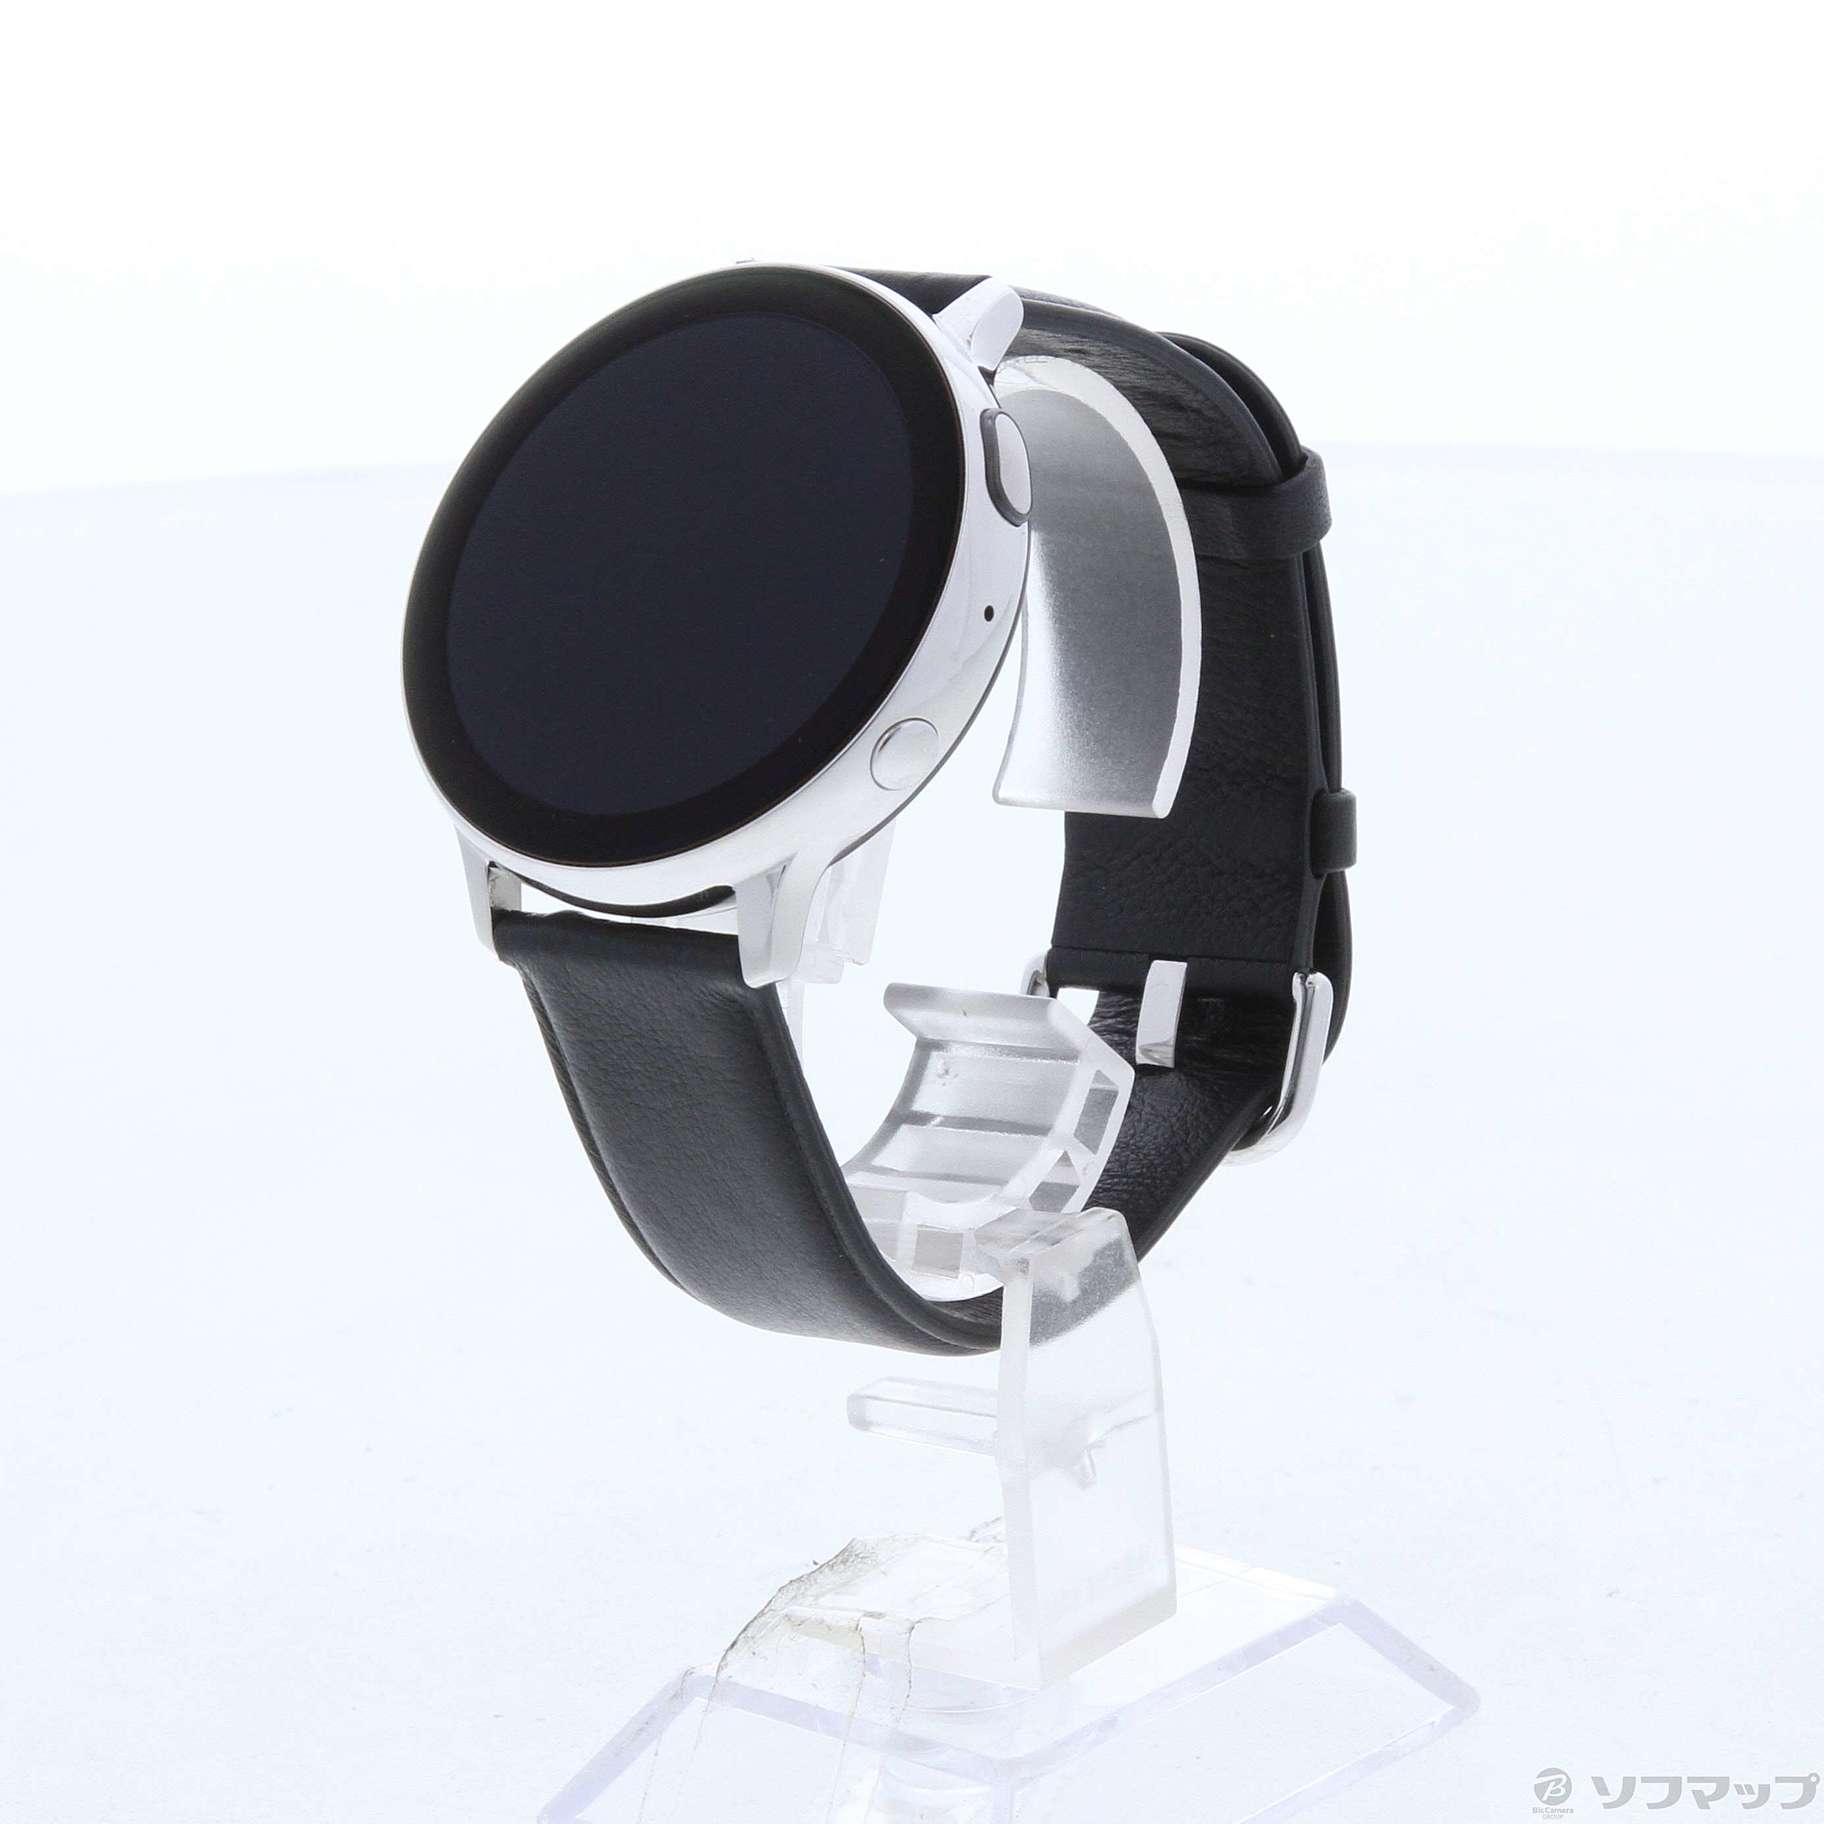 7,920円【未使用】Galaxy Watch Active2 / シルバー / 44mm☆